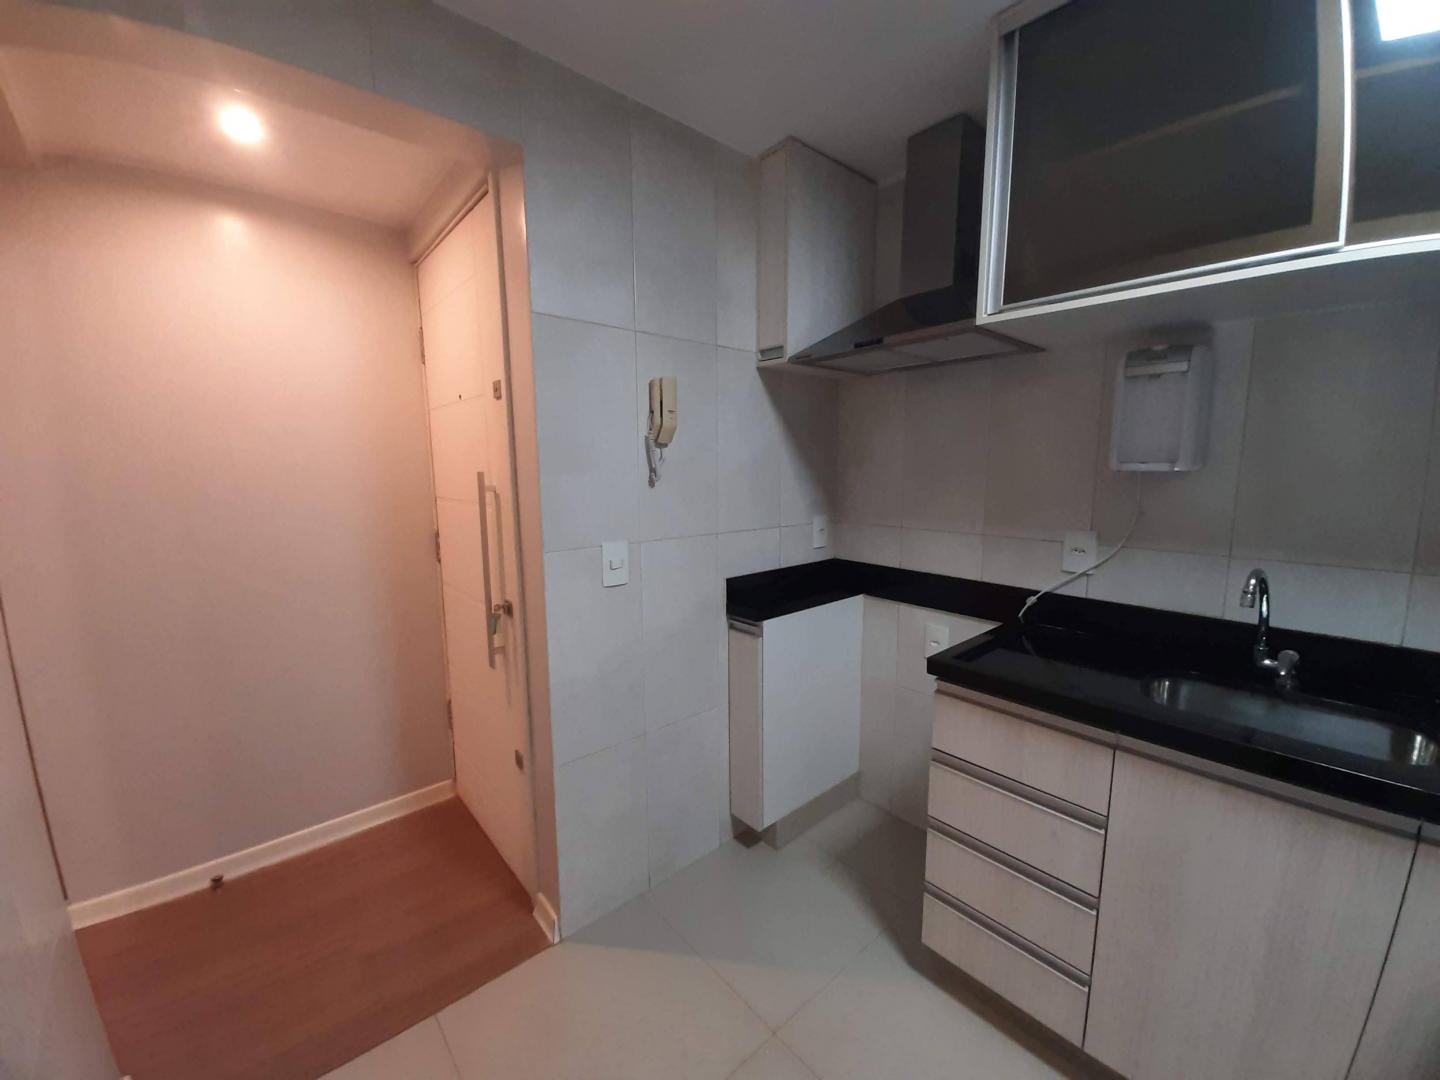 Apartamento, 02 Quartos + 01 Reversível, Taguatinga, Brasília/DF.